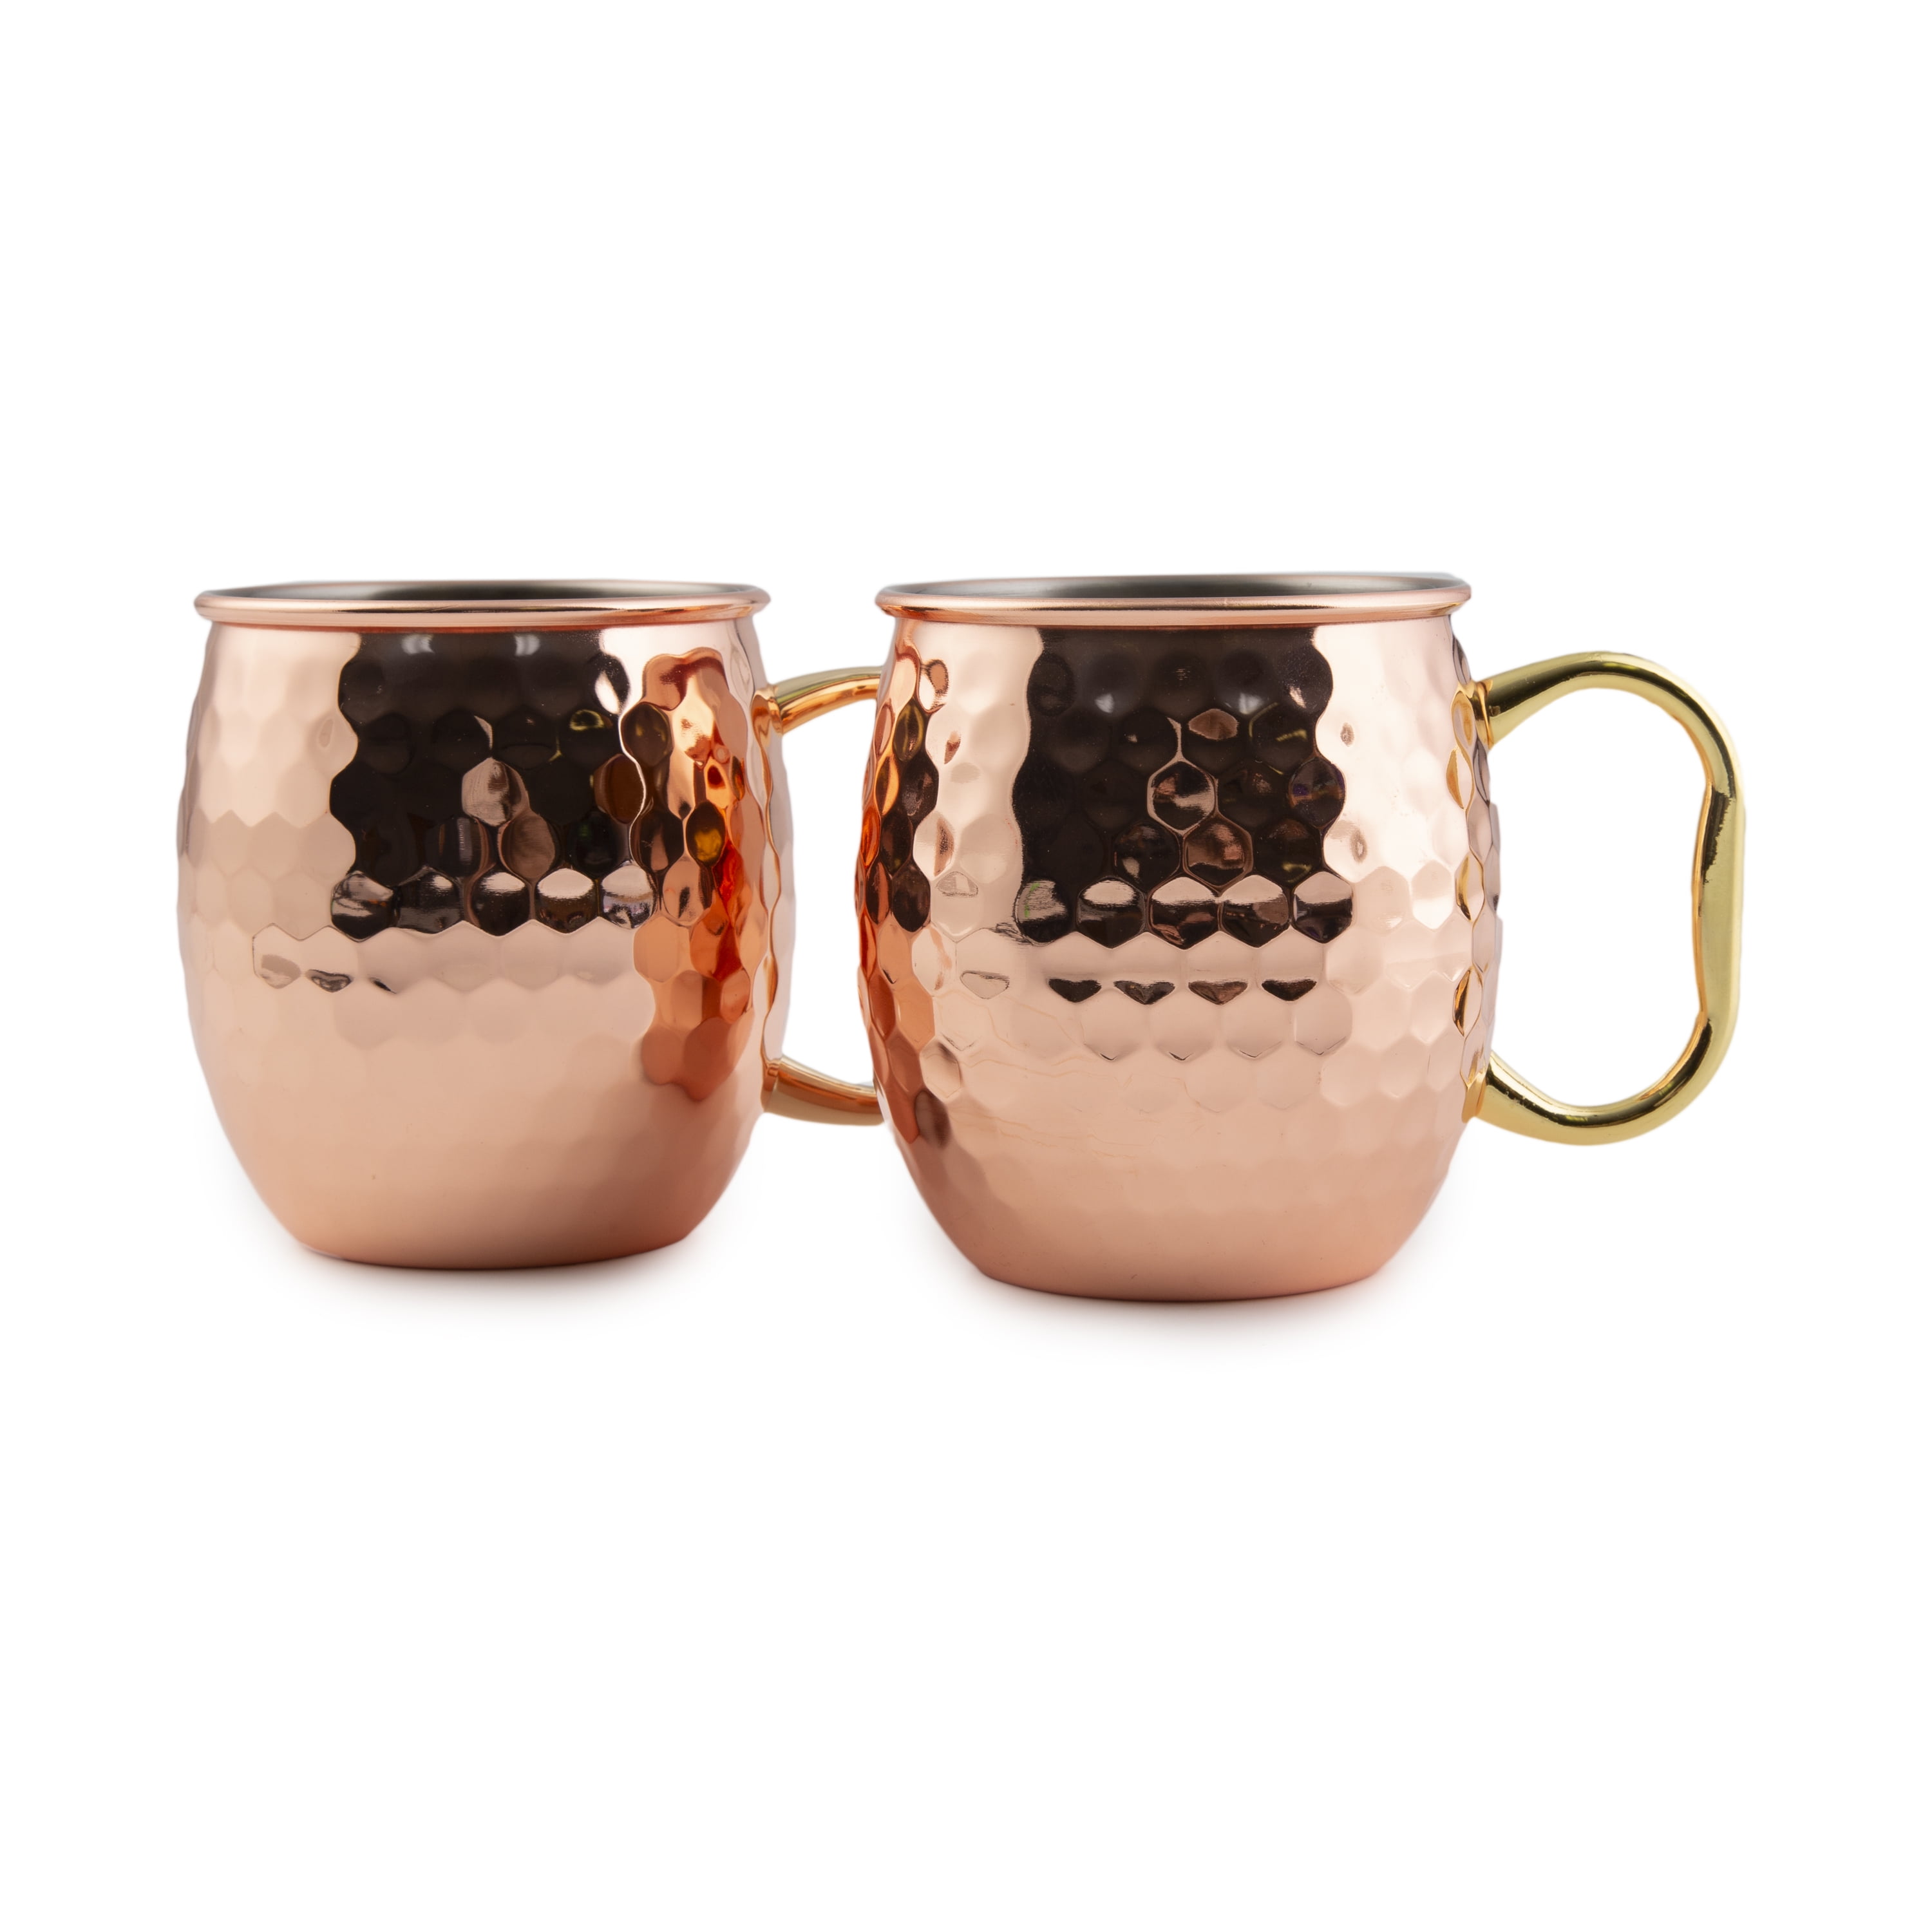 Copper/ Stainless Steel Mug Moscow Mule Coffee Tea Juice Drinkware Utensil Table 